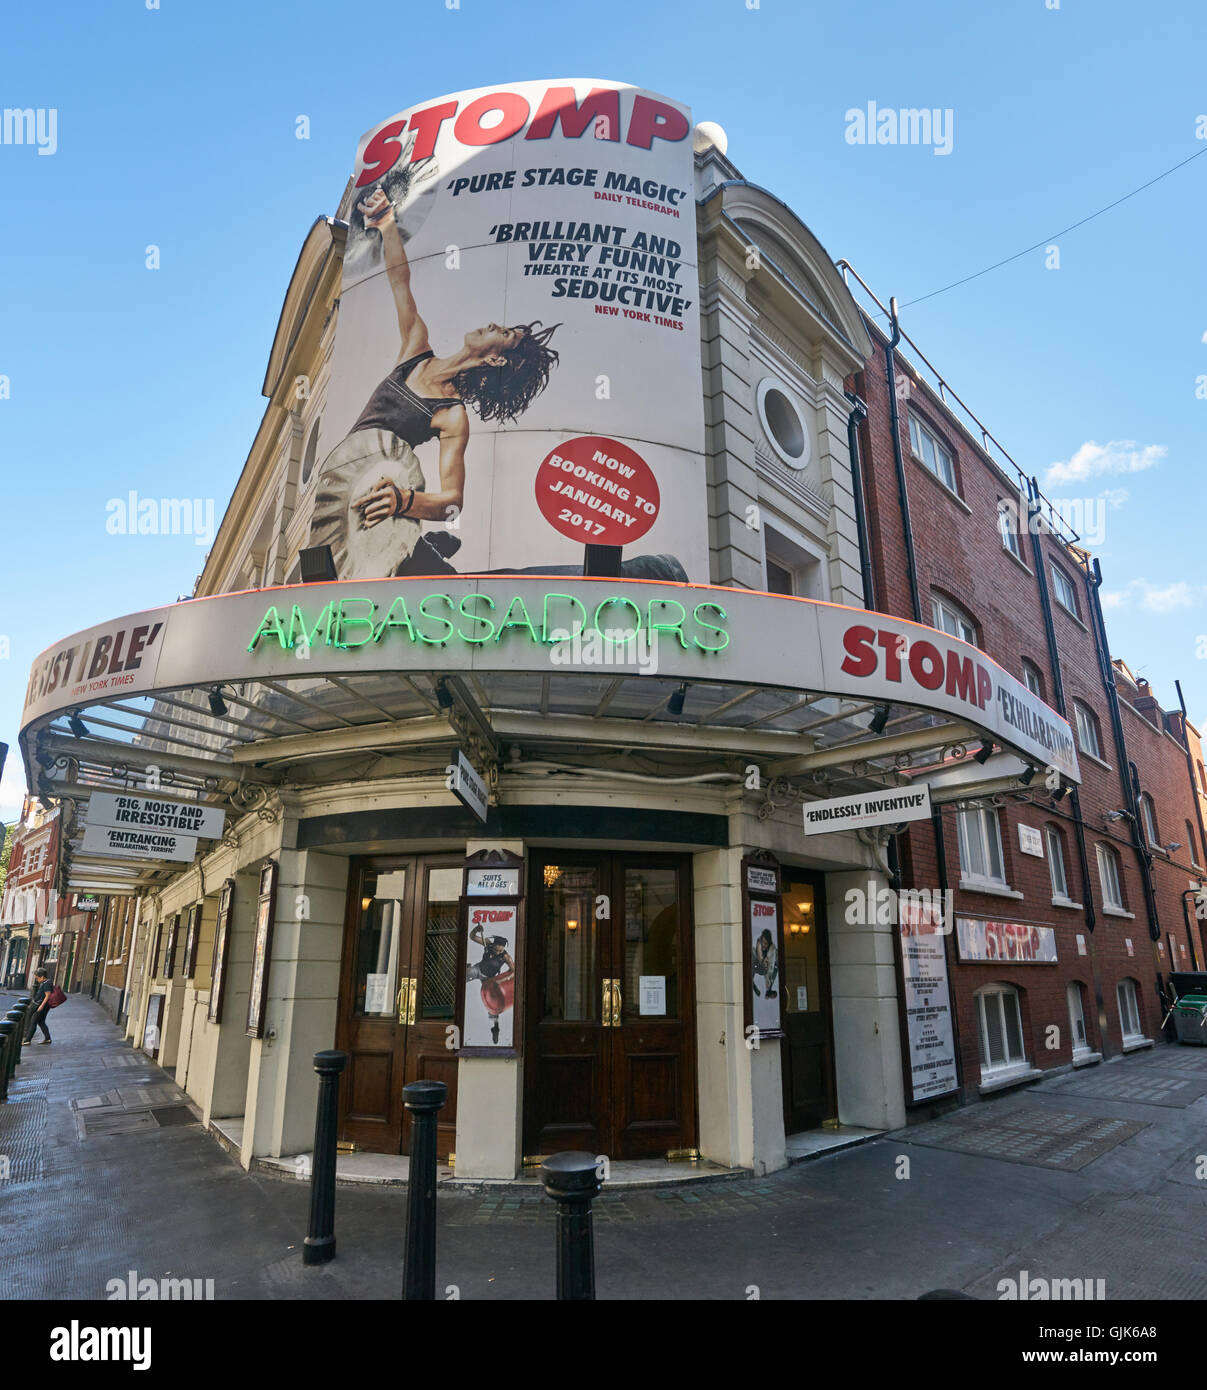 Theatre, Londres. Stade 'Stomp show' Banque D'Images